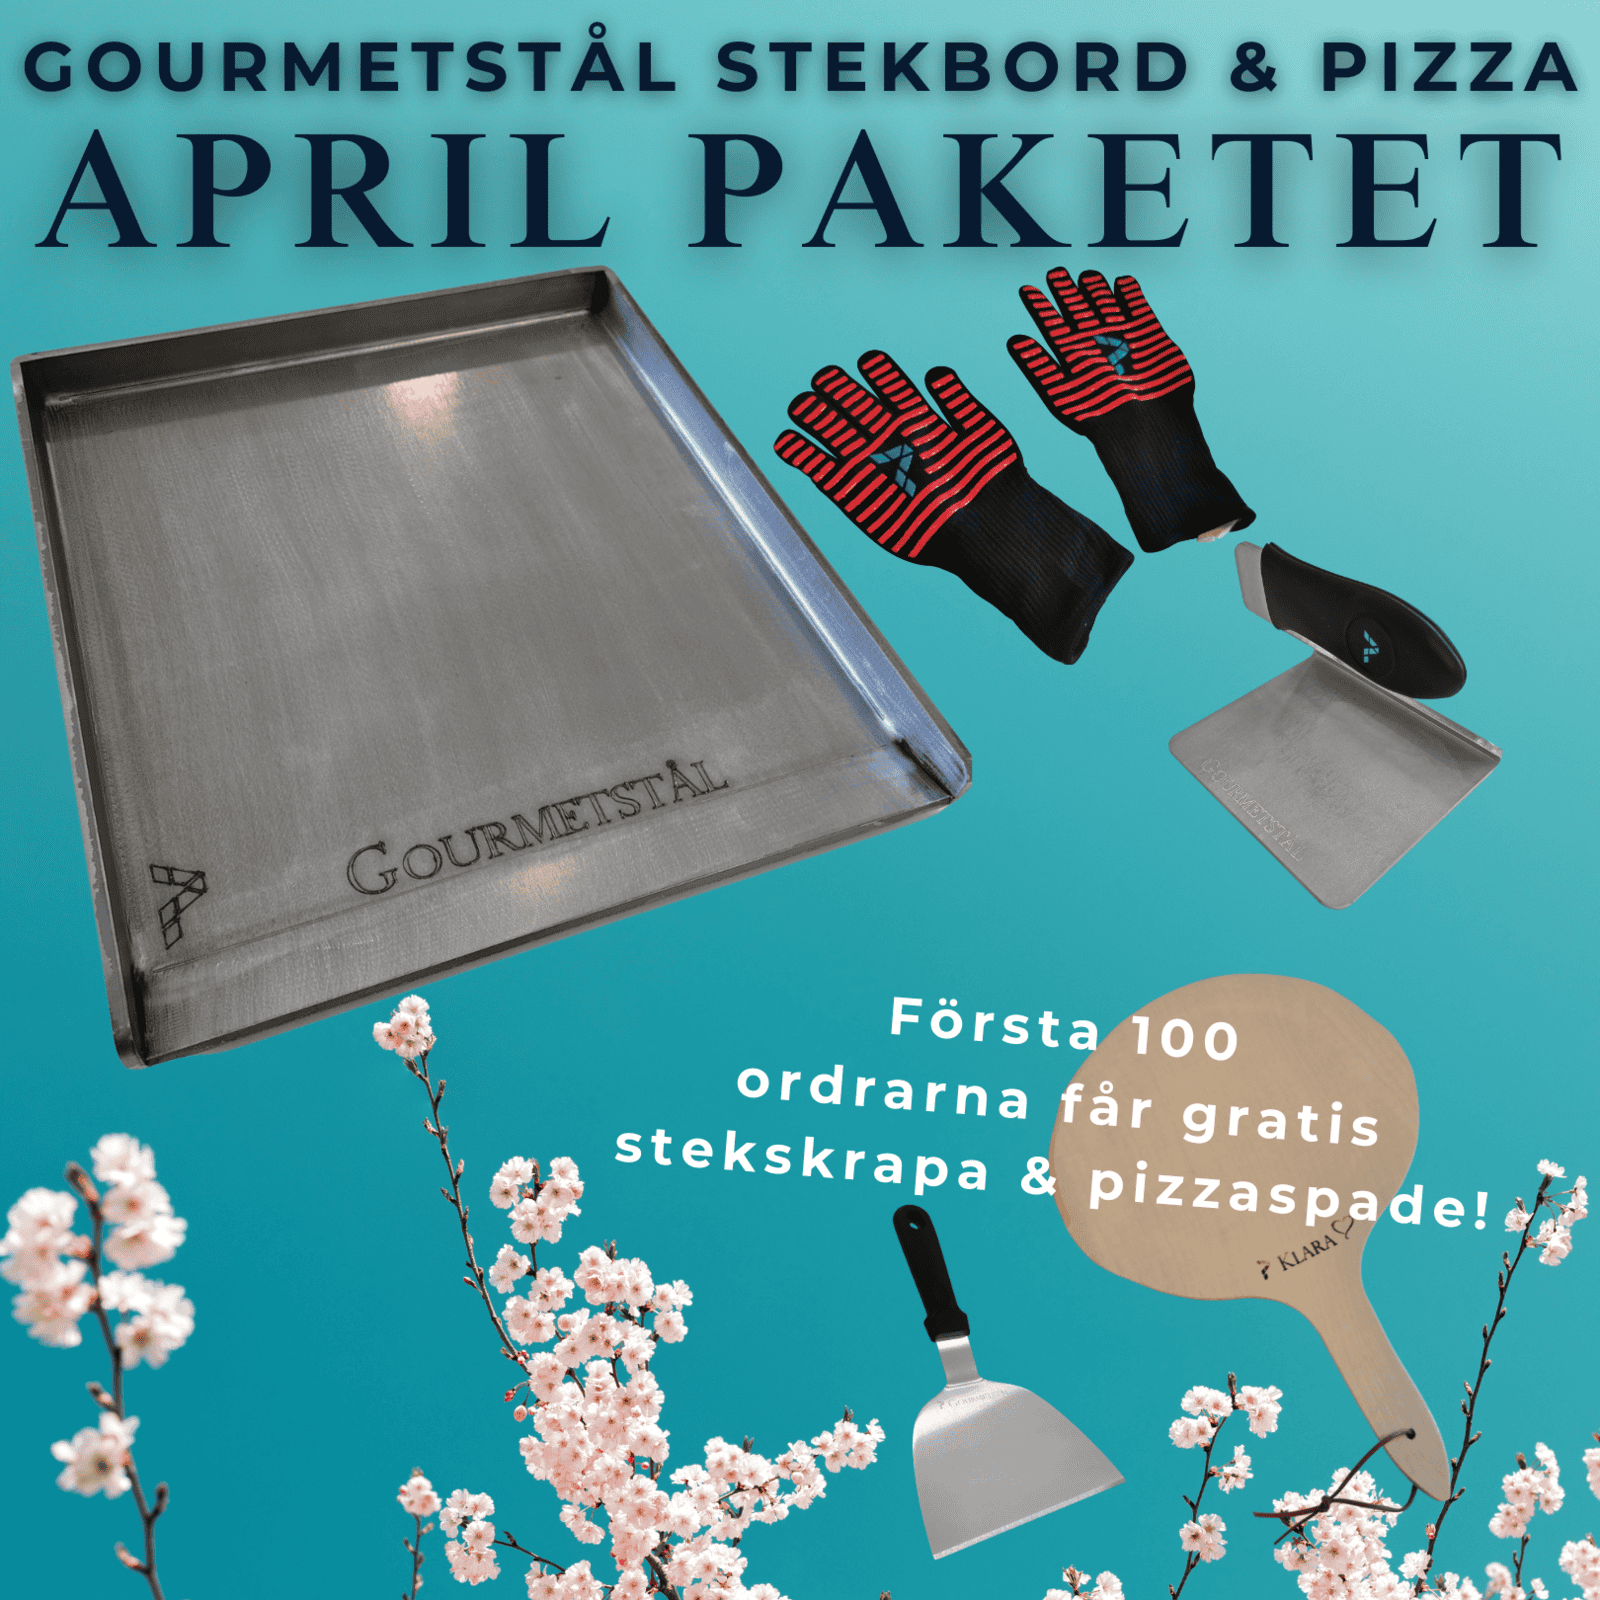 April paketet Gourmetstål - stekbord, pizza & brödbak (Välj ditt paket här: Gourmetstål art 2025 + (gåva stekskrapa & träspade klara))